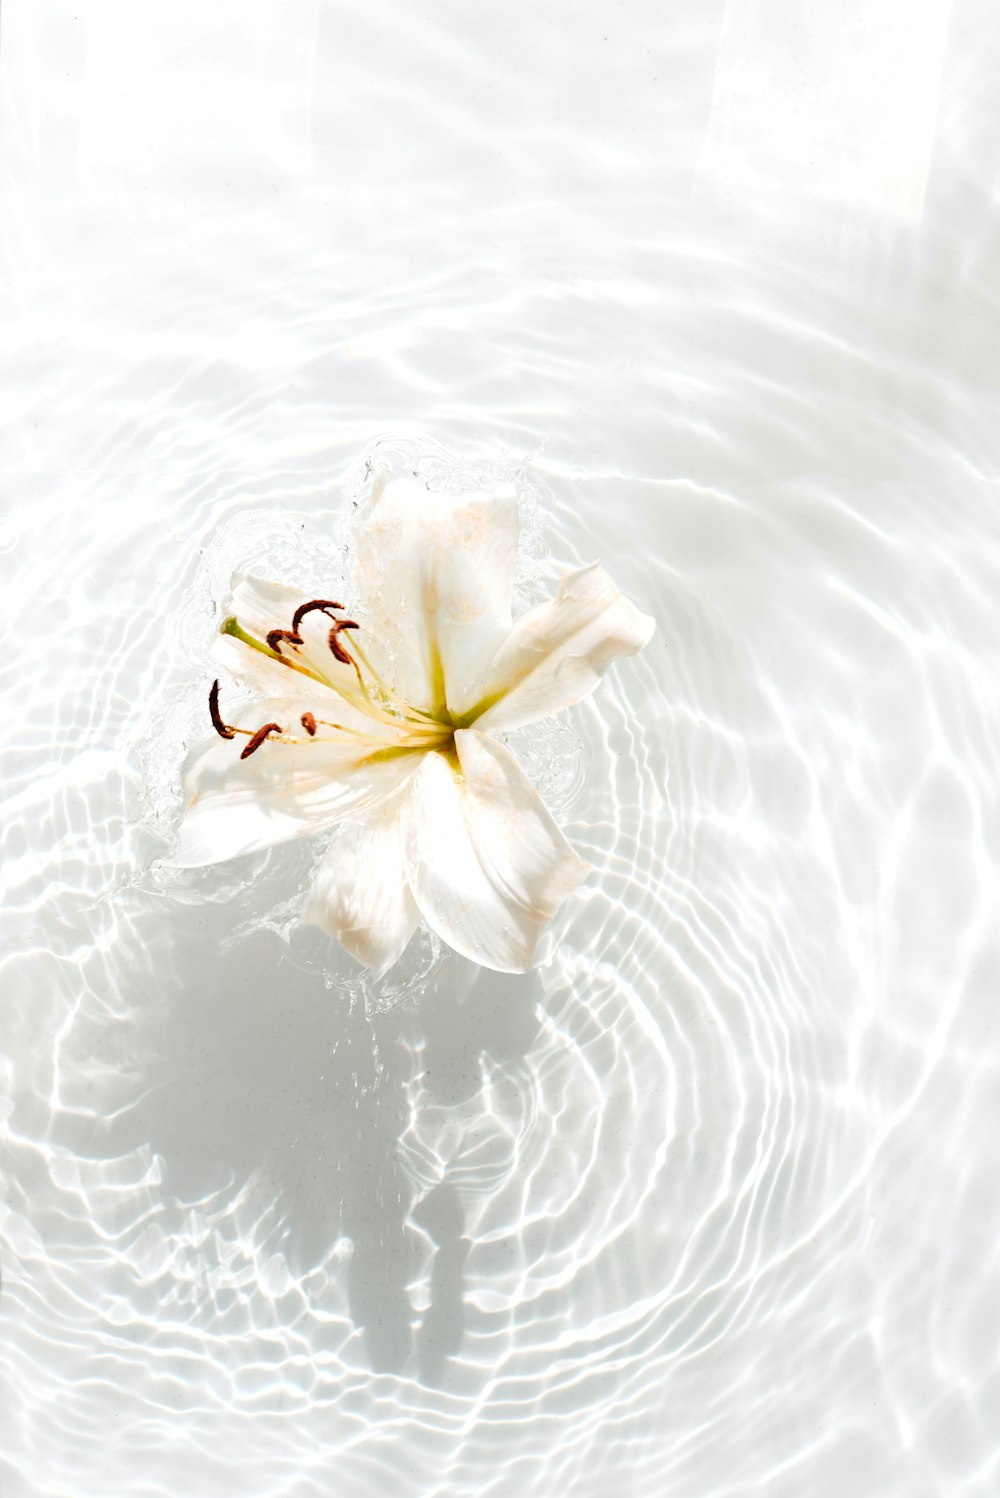 flor blanca y amarilla sobre el agua